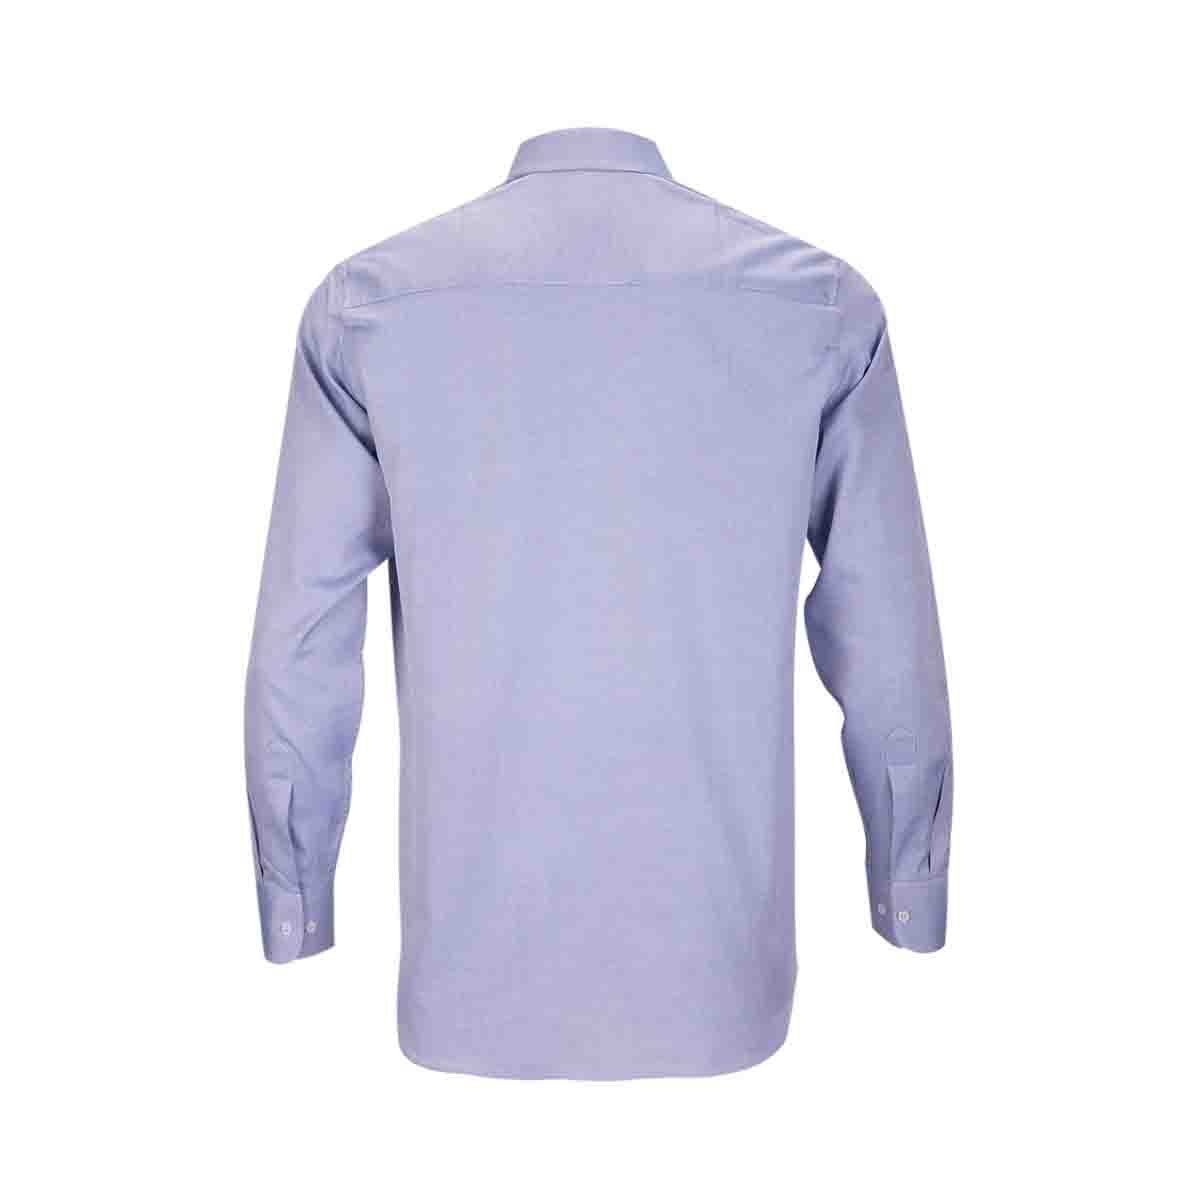 Camisa de Vestir Azul Combinado Bruno Magnani para Caballero